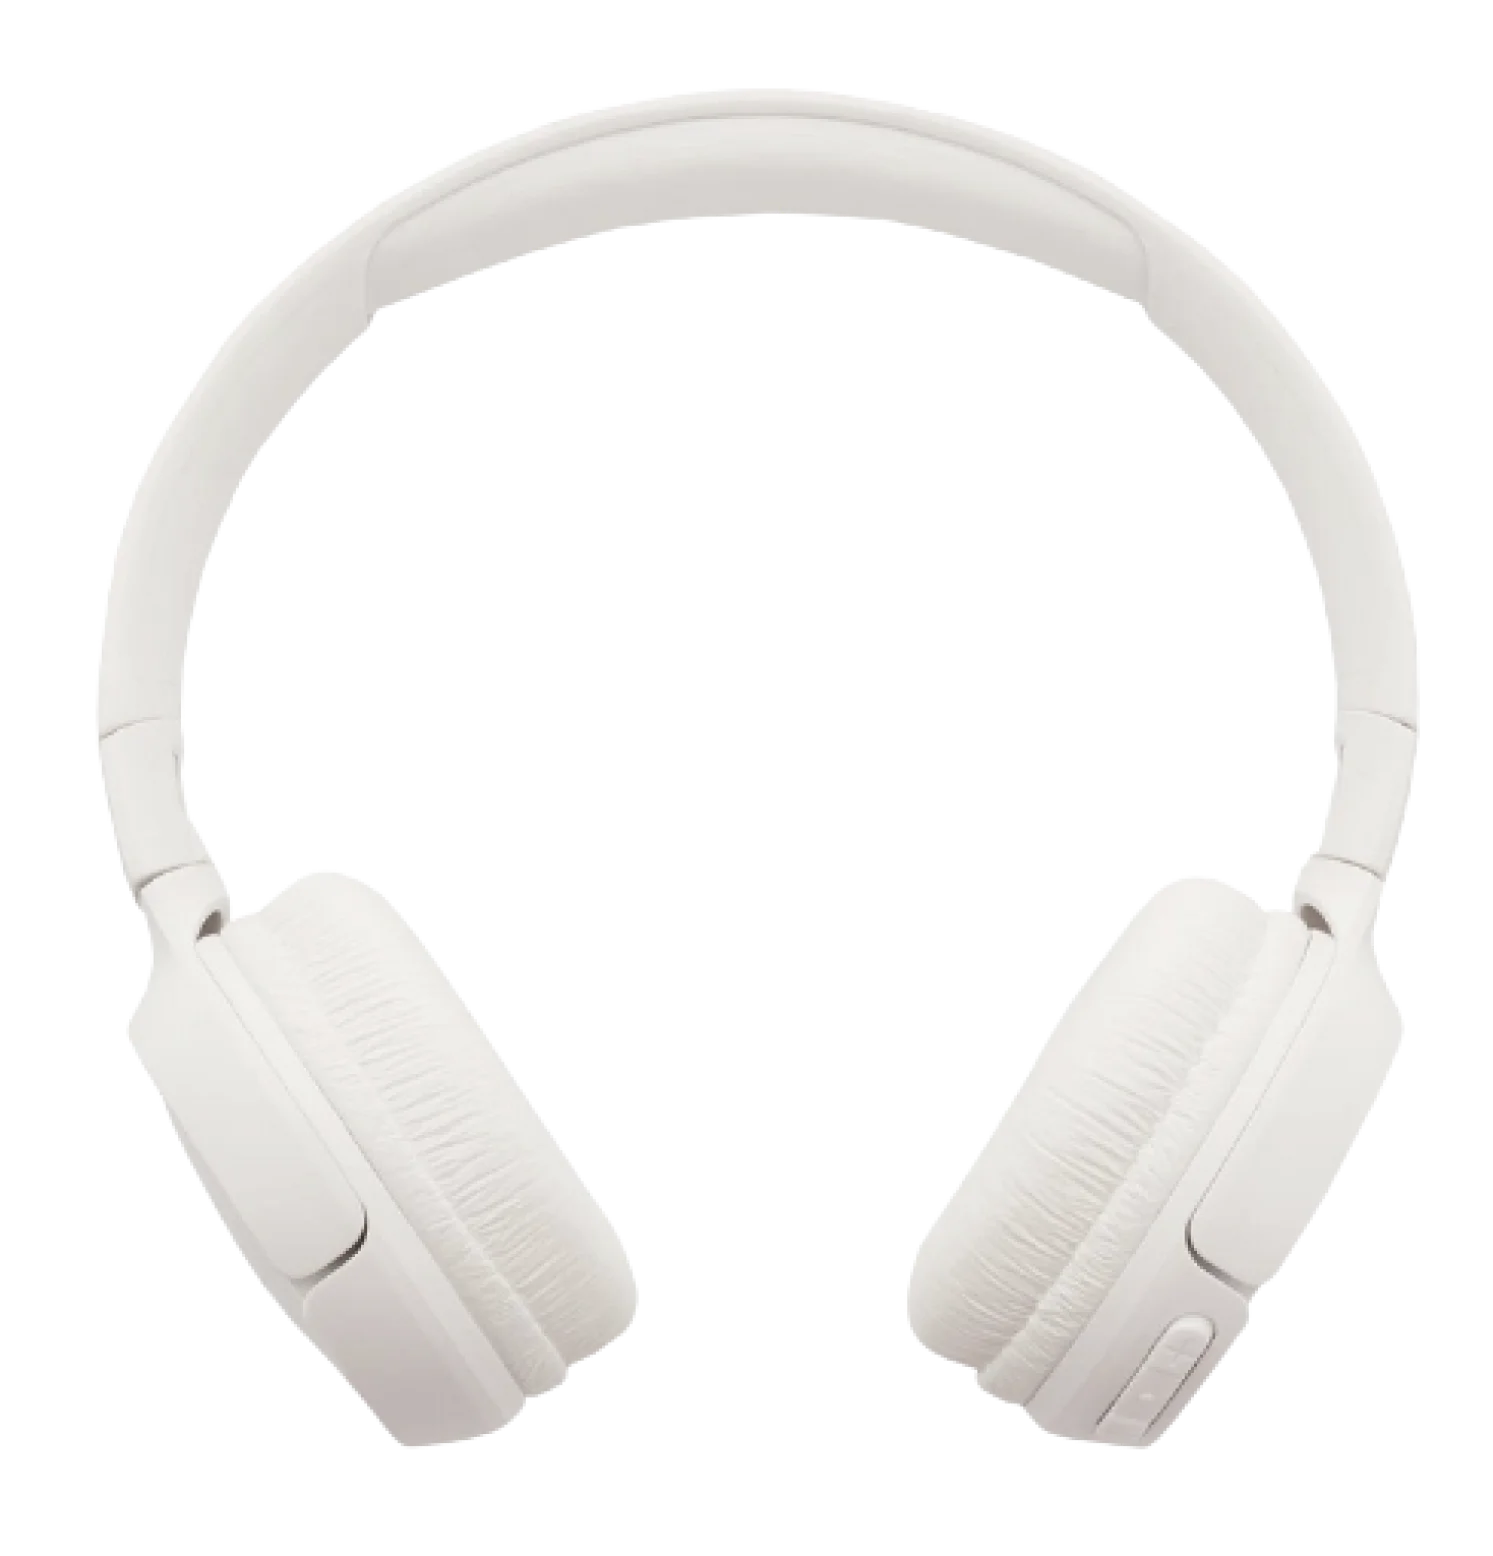 XX59 Headphones image